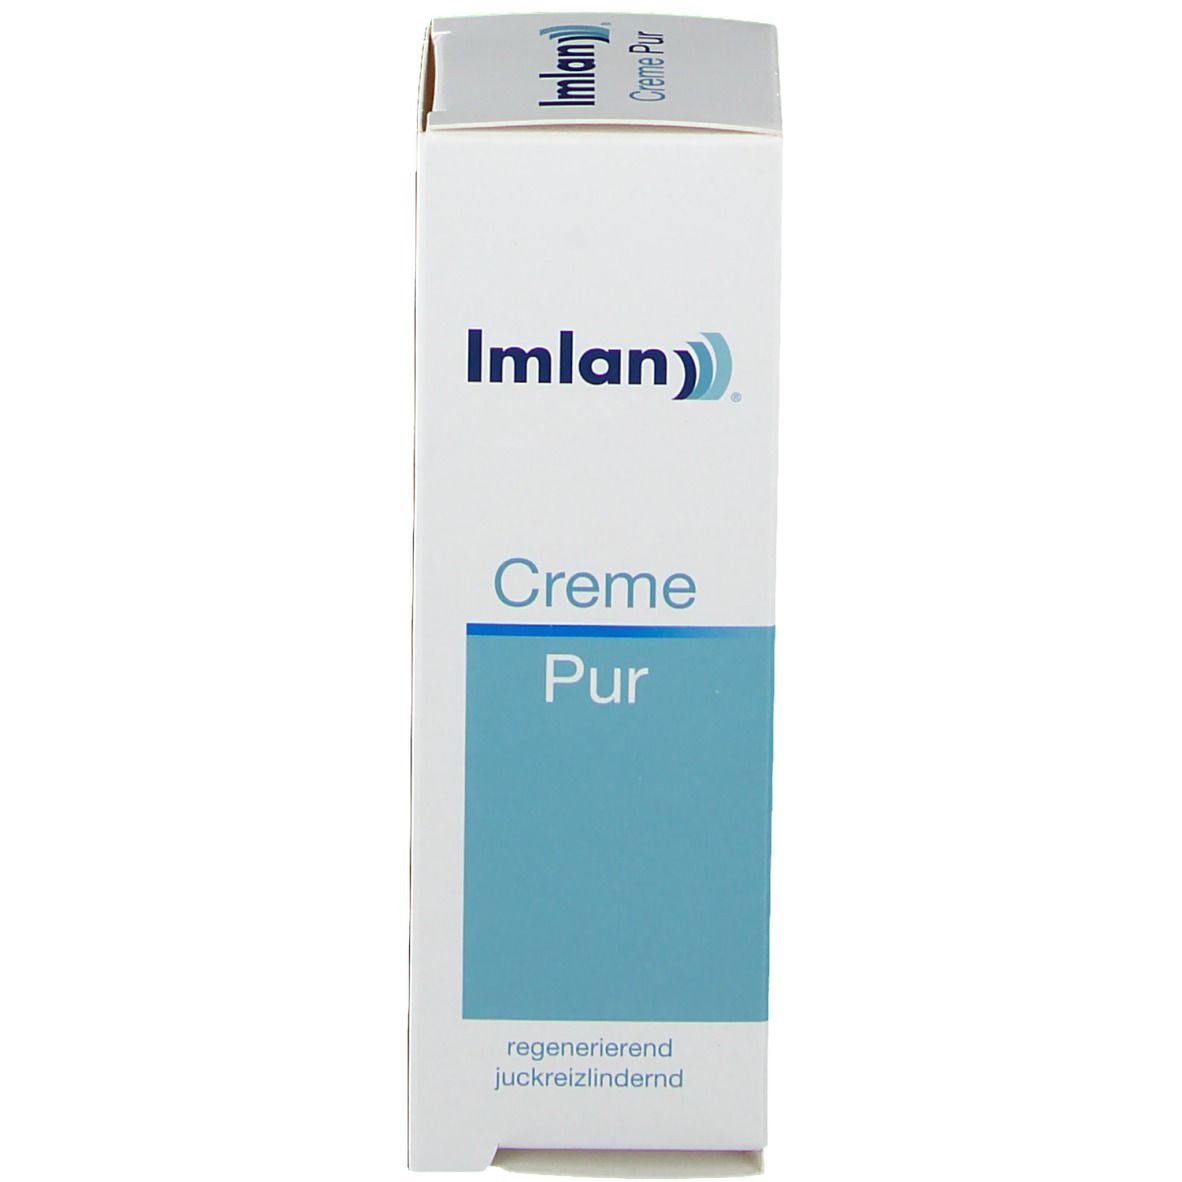 Imlan® Creme Pur